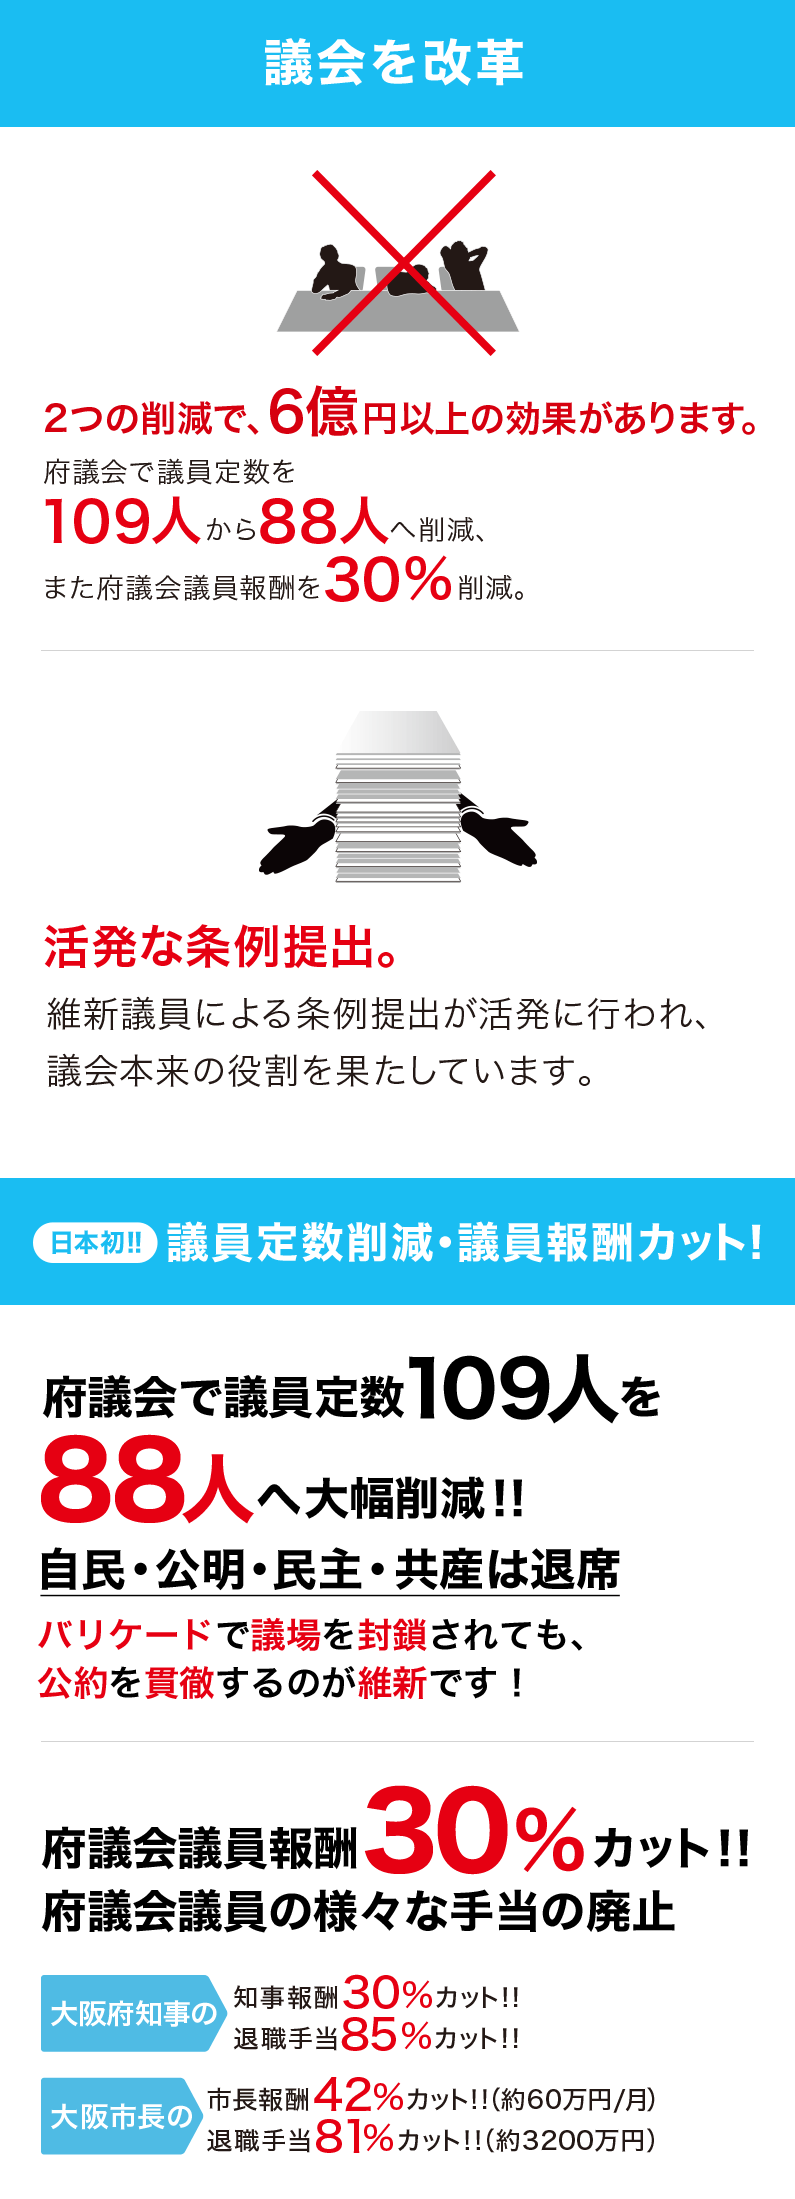 議会を改革、日本初の議員定数削減・議員報酬カット！